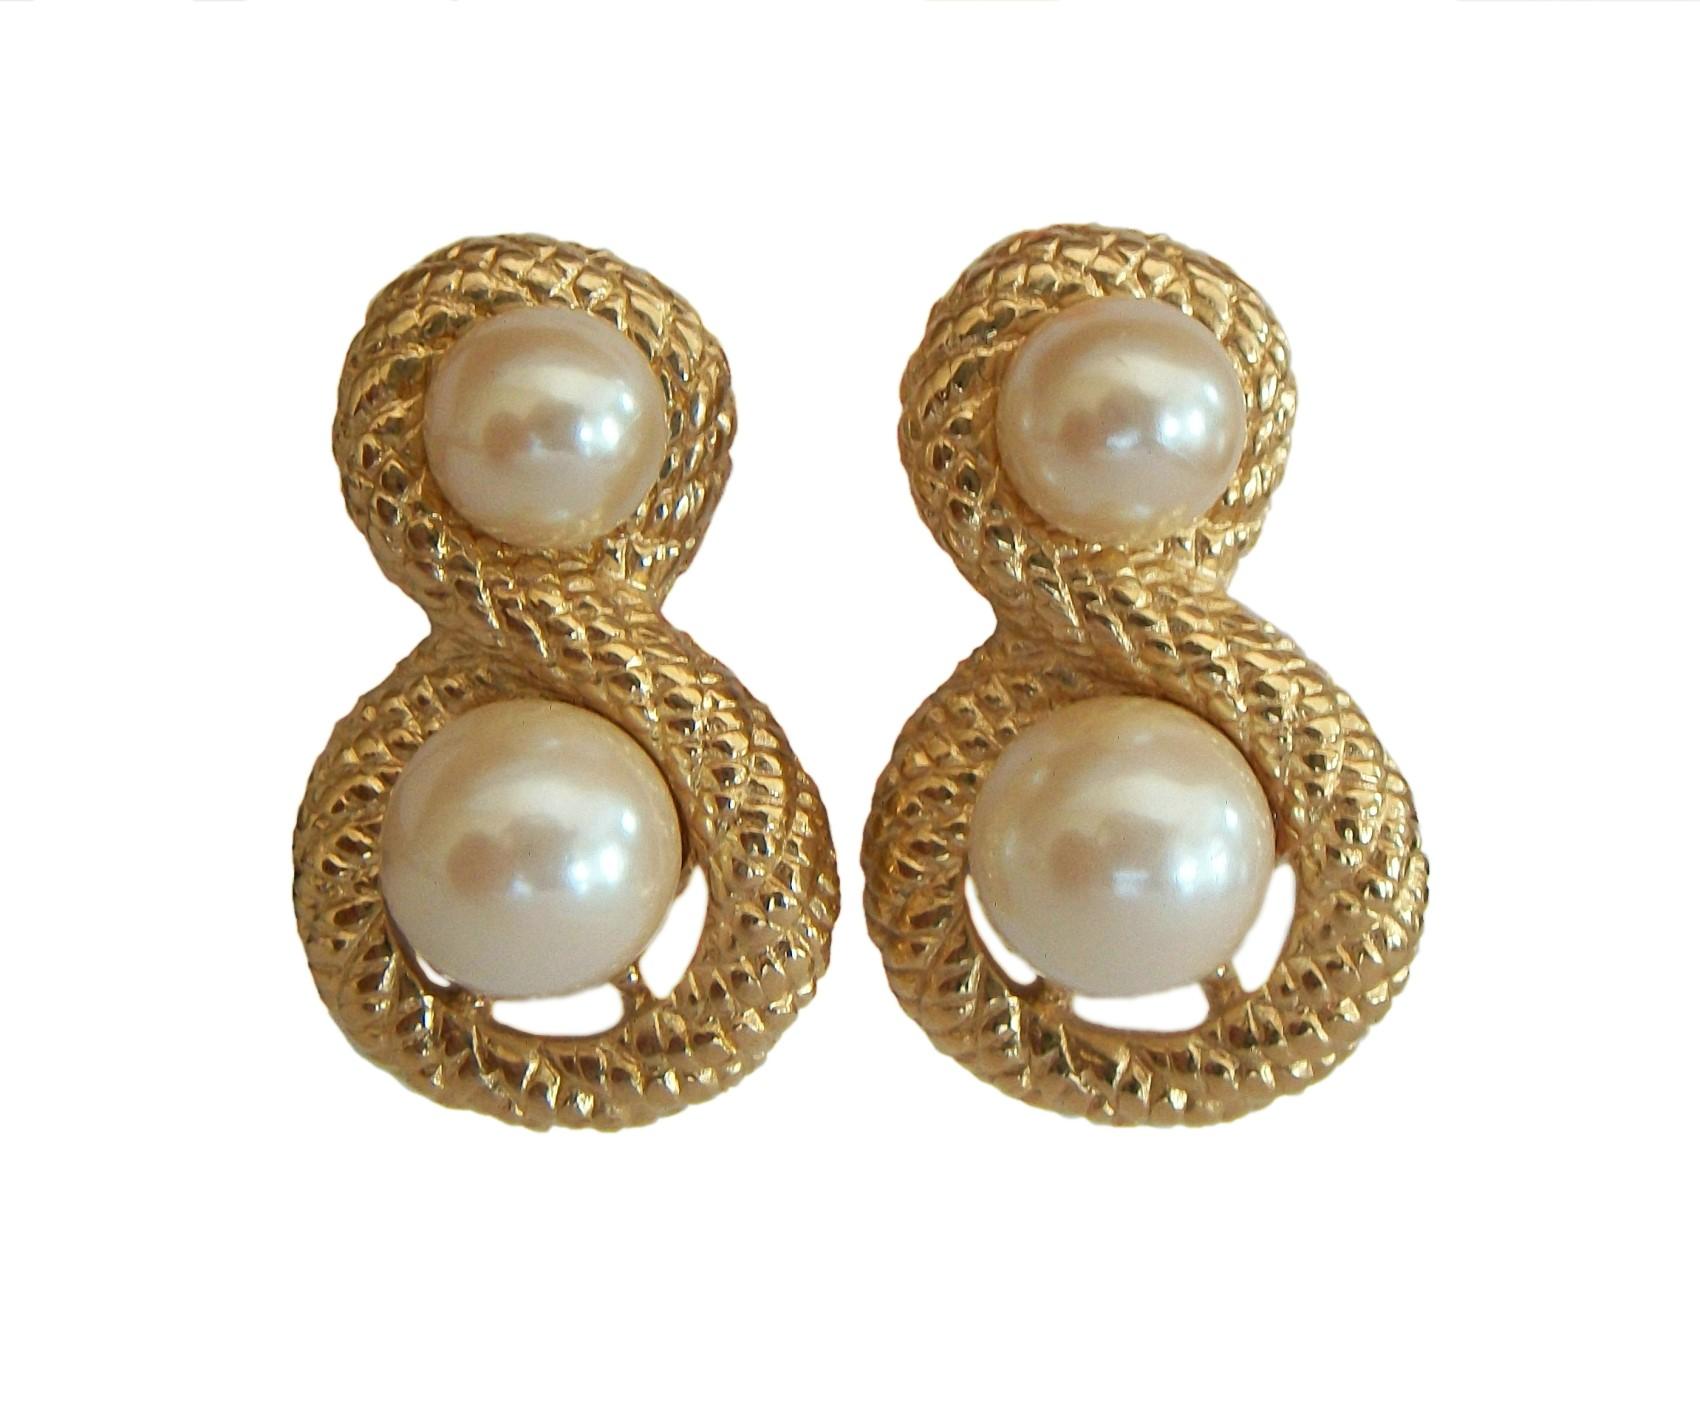 GIVENCHY - Vintage faux Perle und Goldton Seil Twist Aussage Ohrringe - für durchbohrte Ohren - signiert - circa 1980er Jahre.

Ausgezeichneter Vintage-Zustand - kein Verlust - keine Schäden - keine Reparaturen - ersetzte Schmetterlingsrücken -